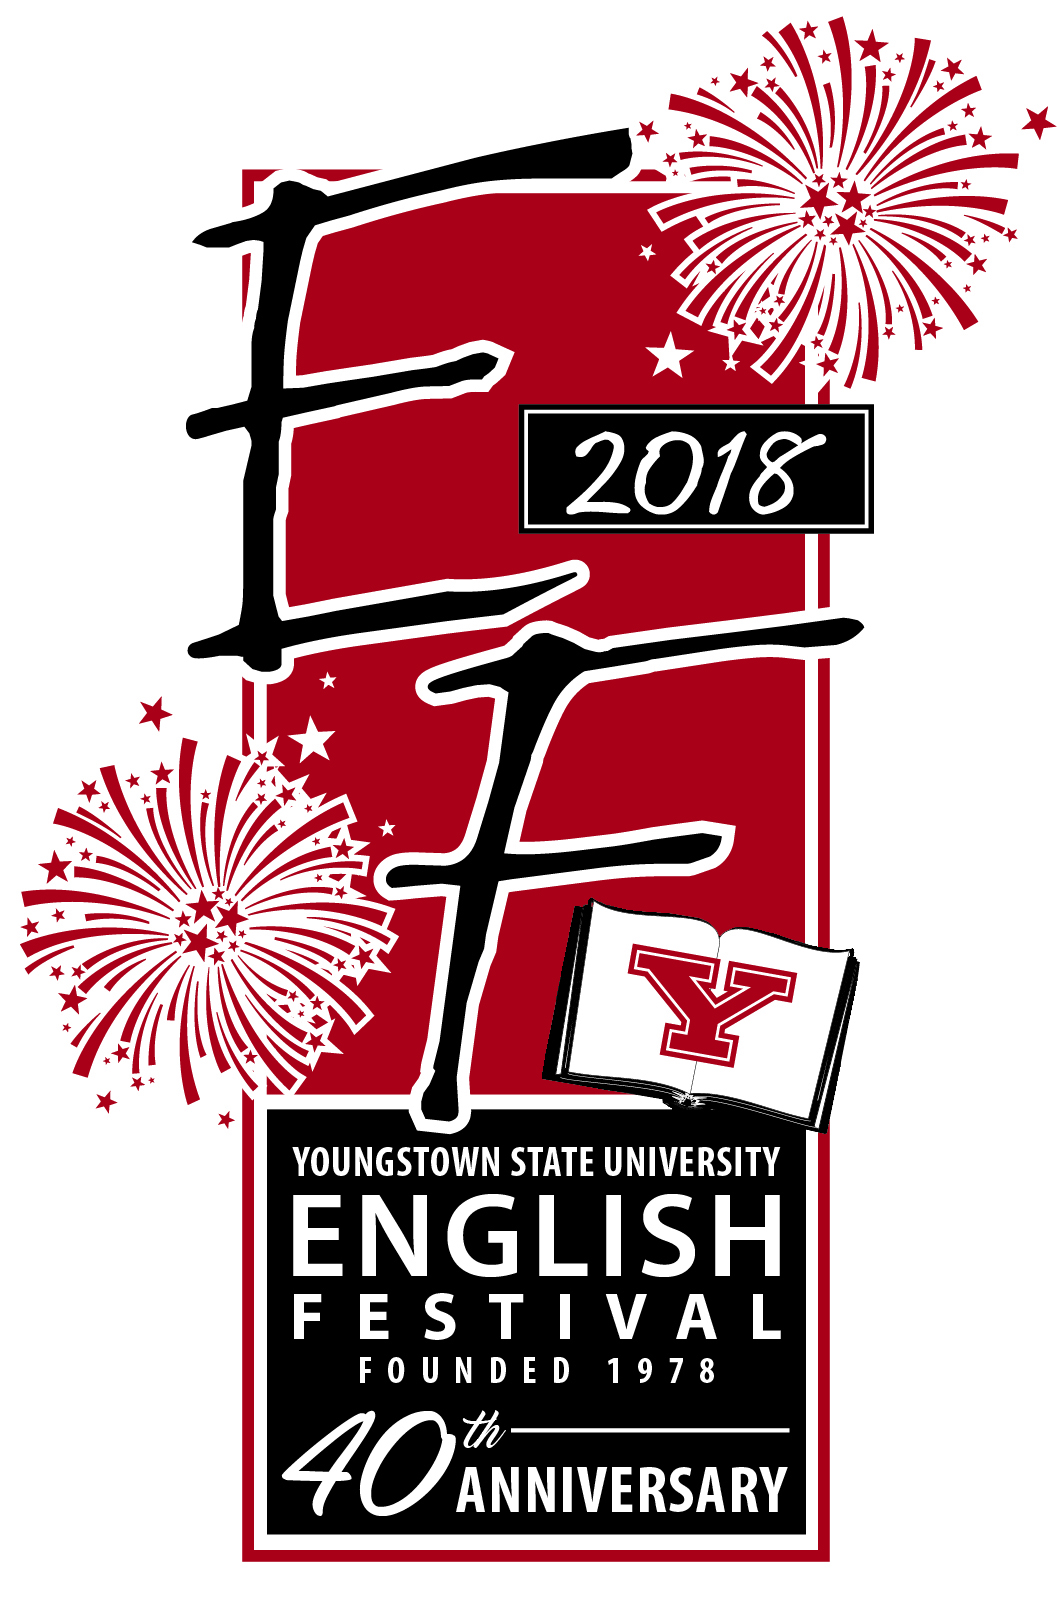 YSU English Festival celebrates 40th anniversary this week YSU